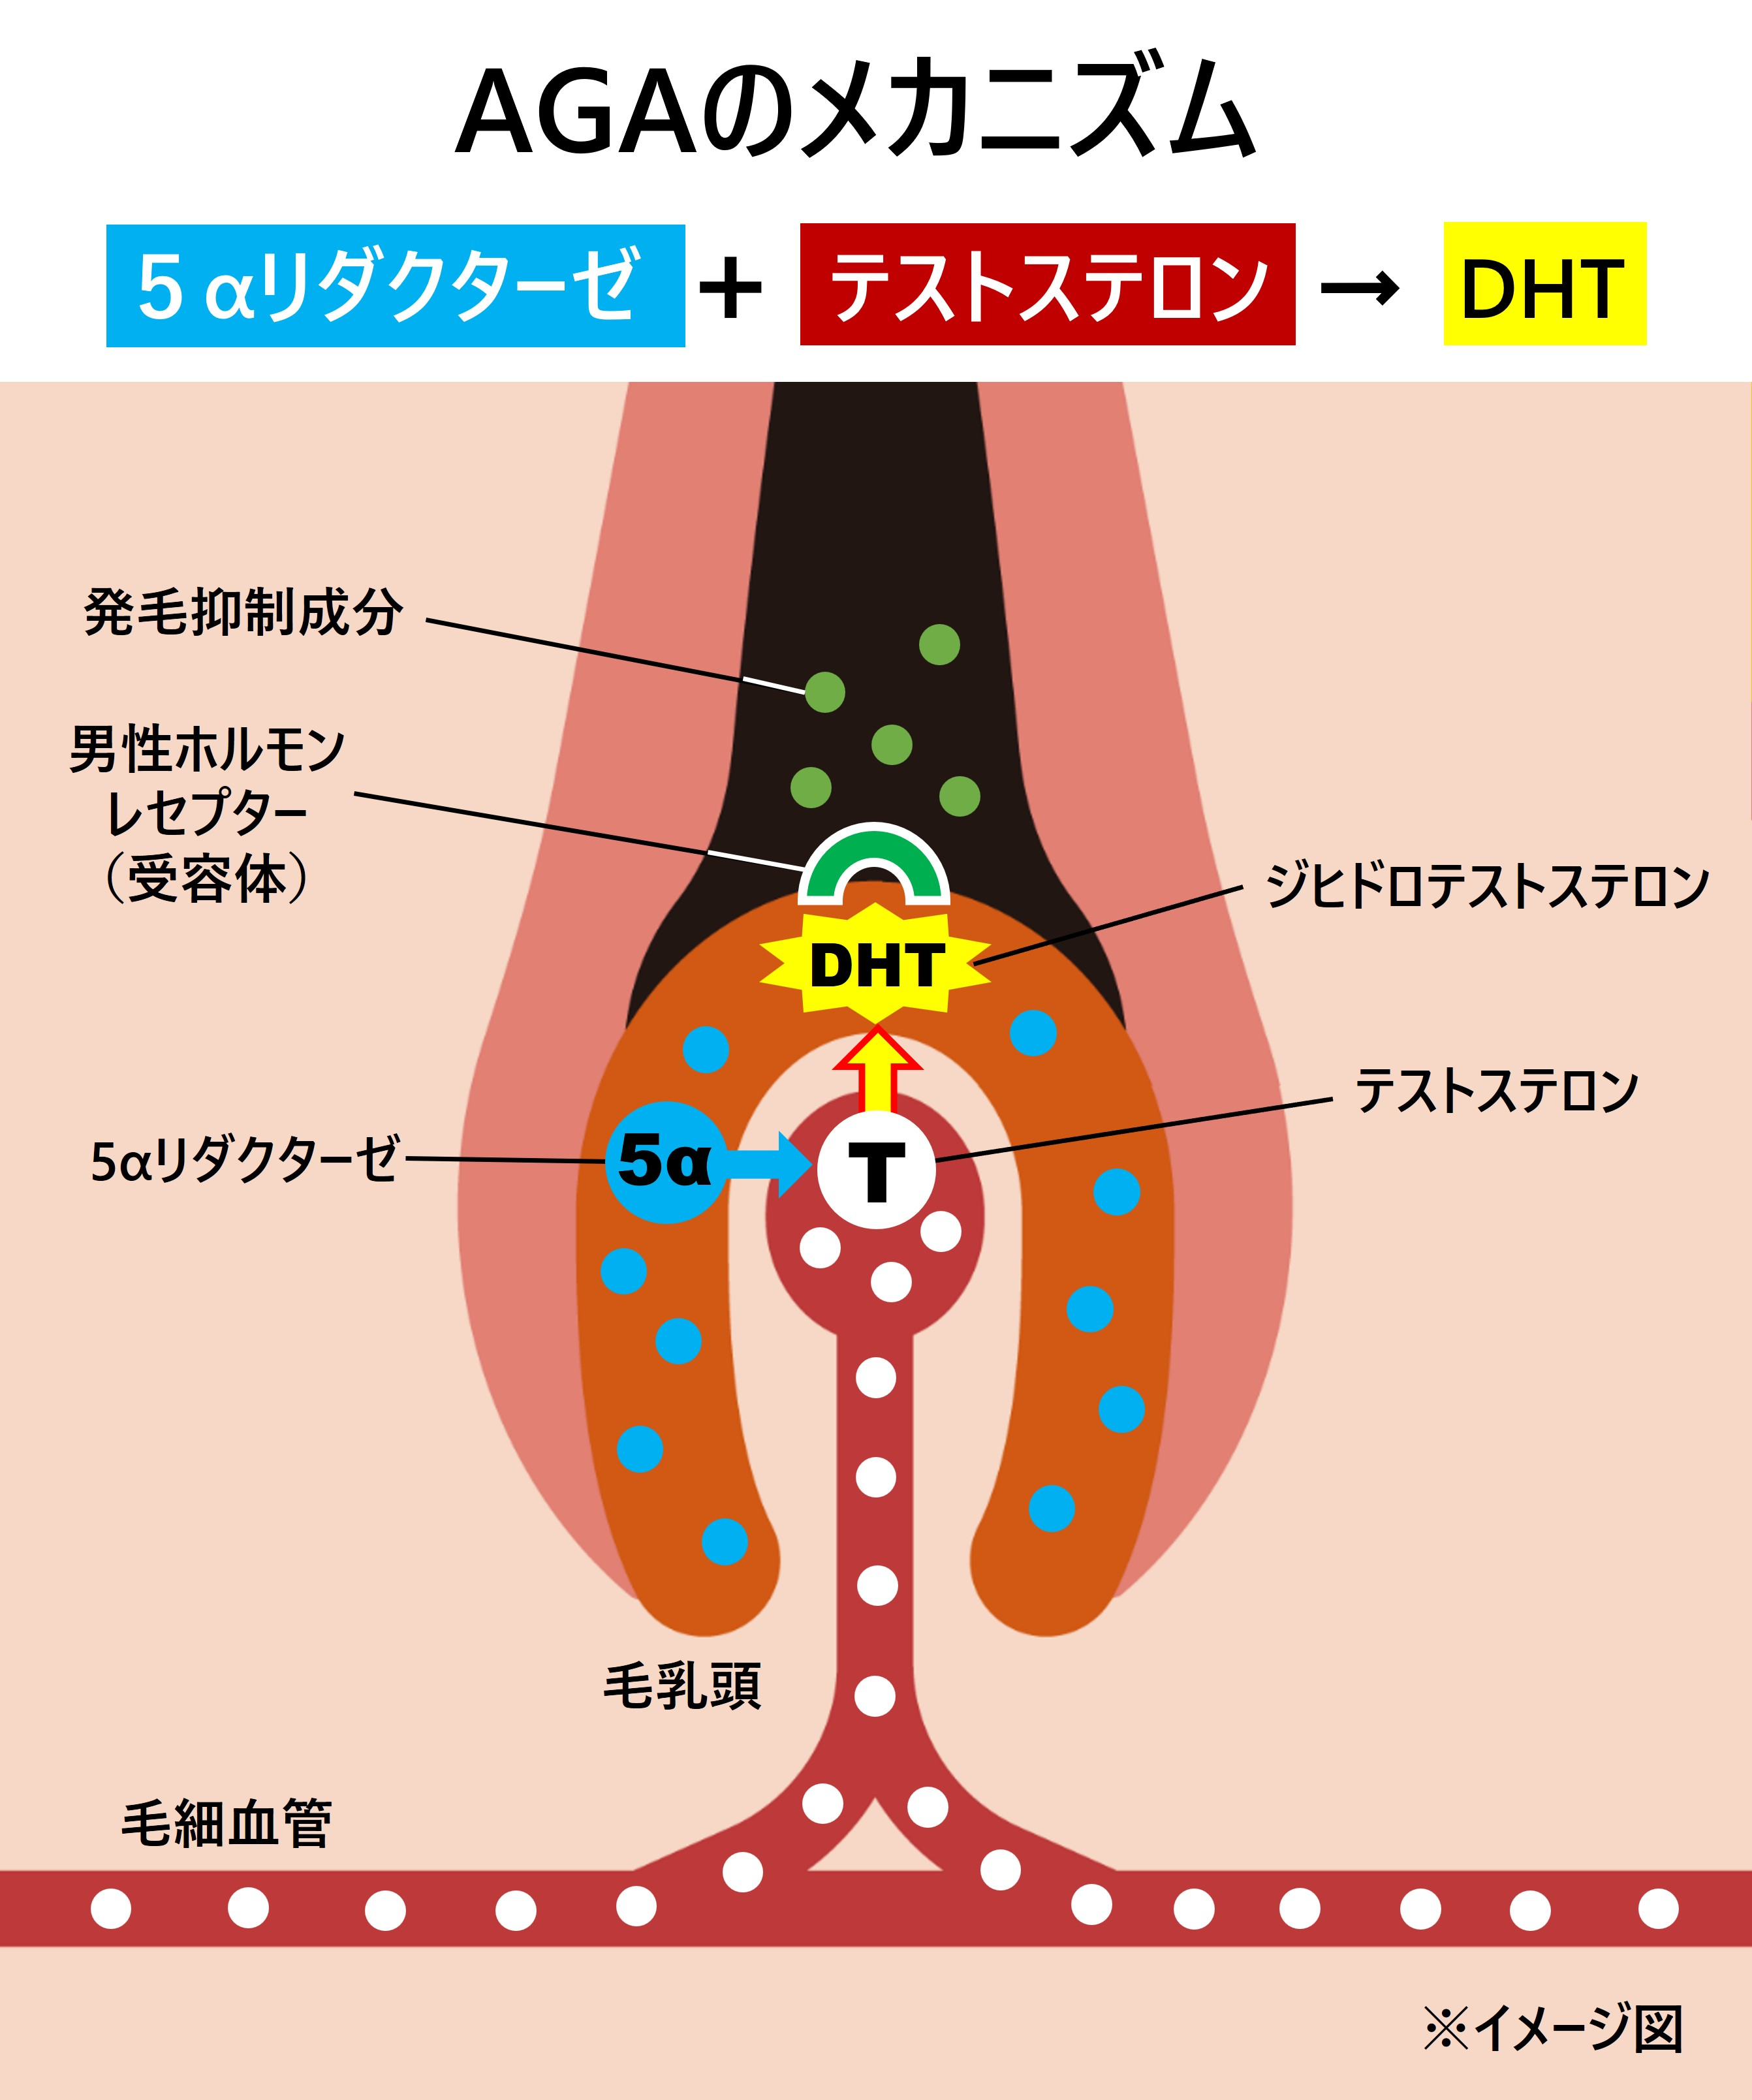 テストステロンは、「5αリダクターゼ」という酵素によって、AGAの原因物質「ジヒドロテストステロン（DHT）」に変換される。男性ホルモンのレセプター（受容体）と結合して毛乳頭に作用し、毛の成長期を短くする。AGAのメカニズムについてのイメージ図